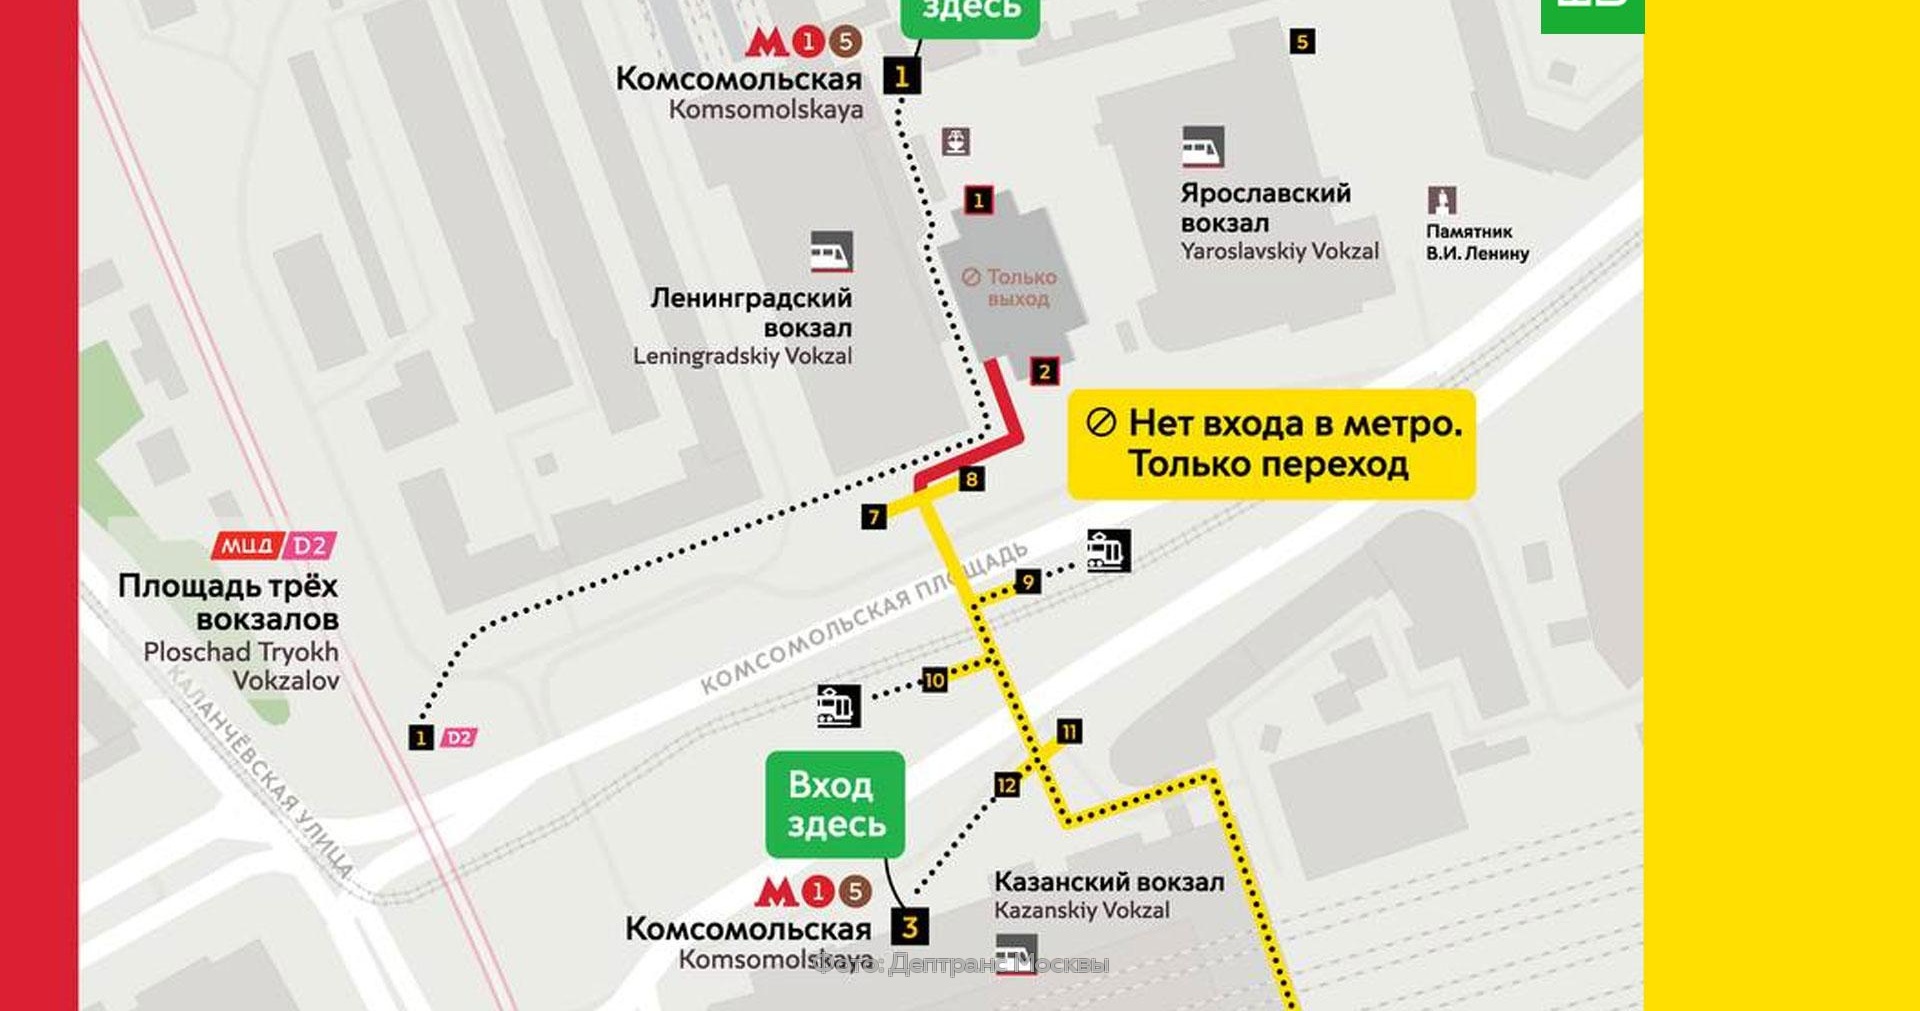 метро комсомольская на карте